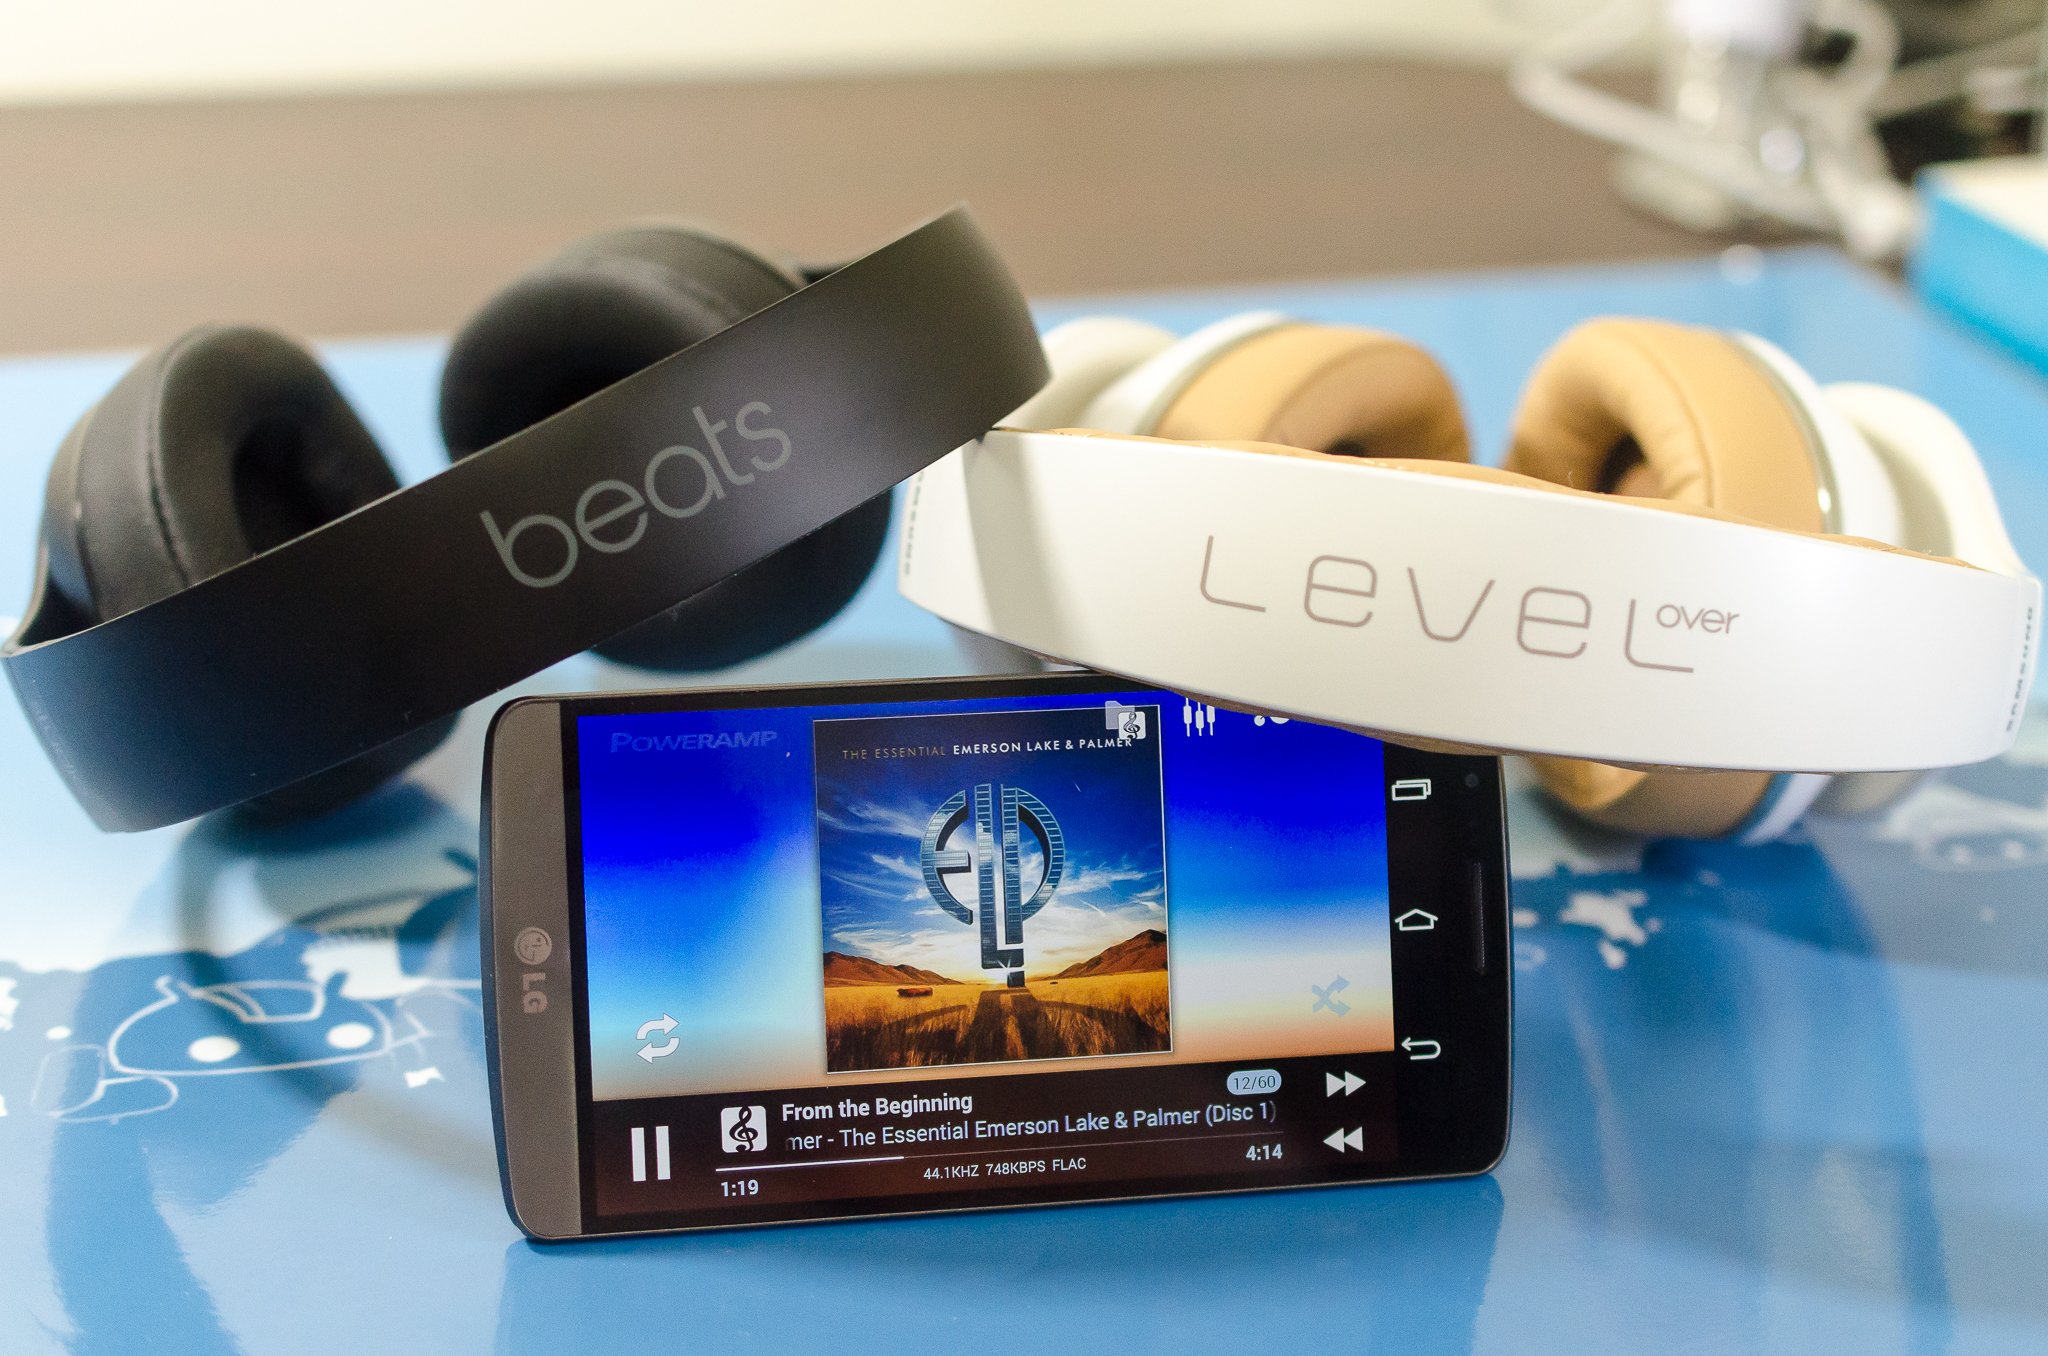 Samsung Level Overs versus Beats Studio Wireless